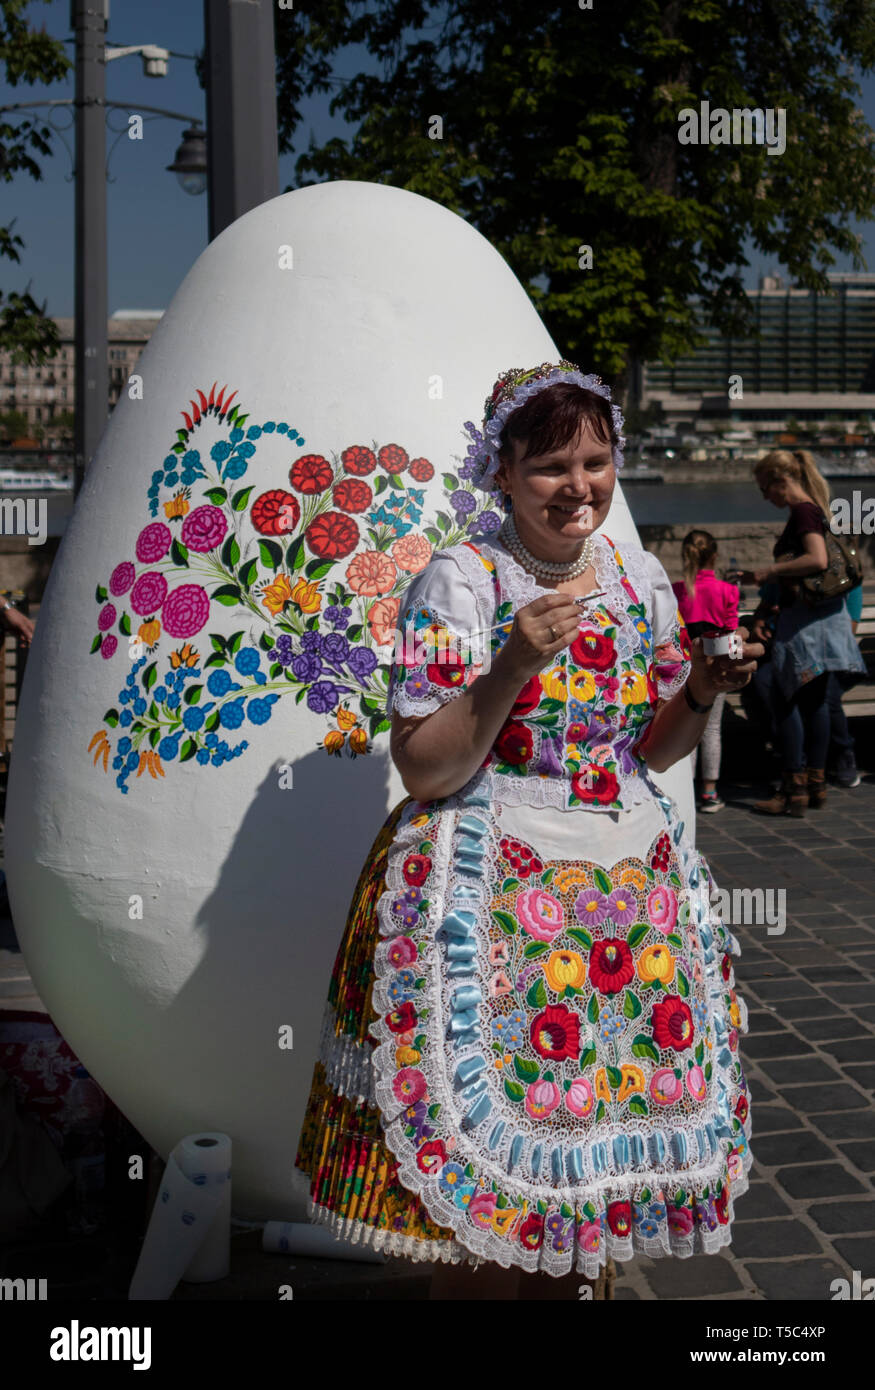 BUDAPEST/Hongrie - 04.21.2019 : une femme en costume traditionnel folk brodé décore un Œuf de Pâques géant avec des motifs floraux. Banque D'Images